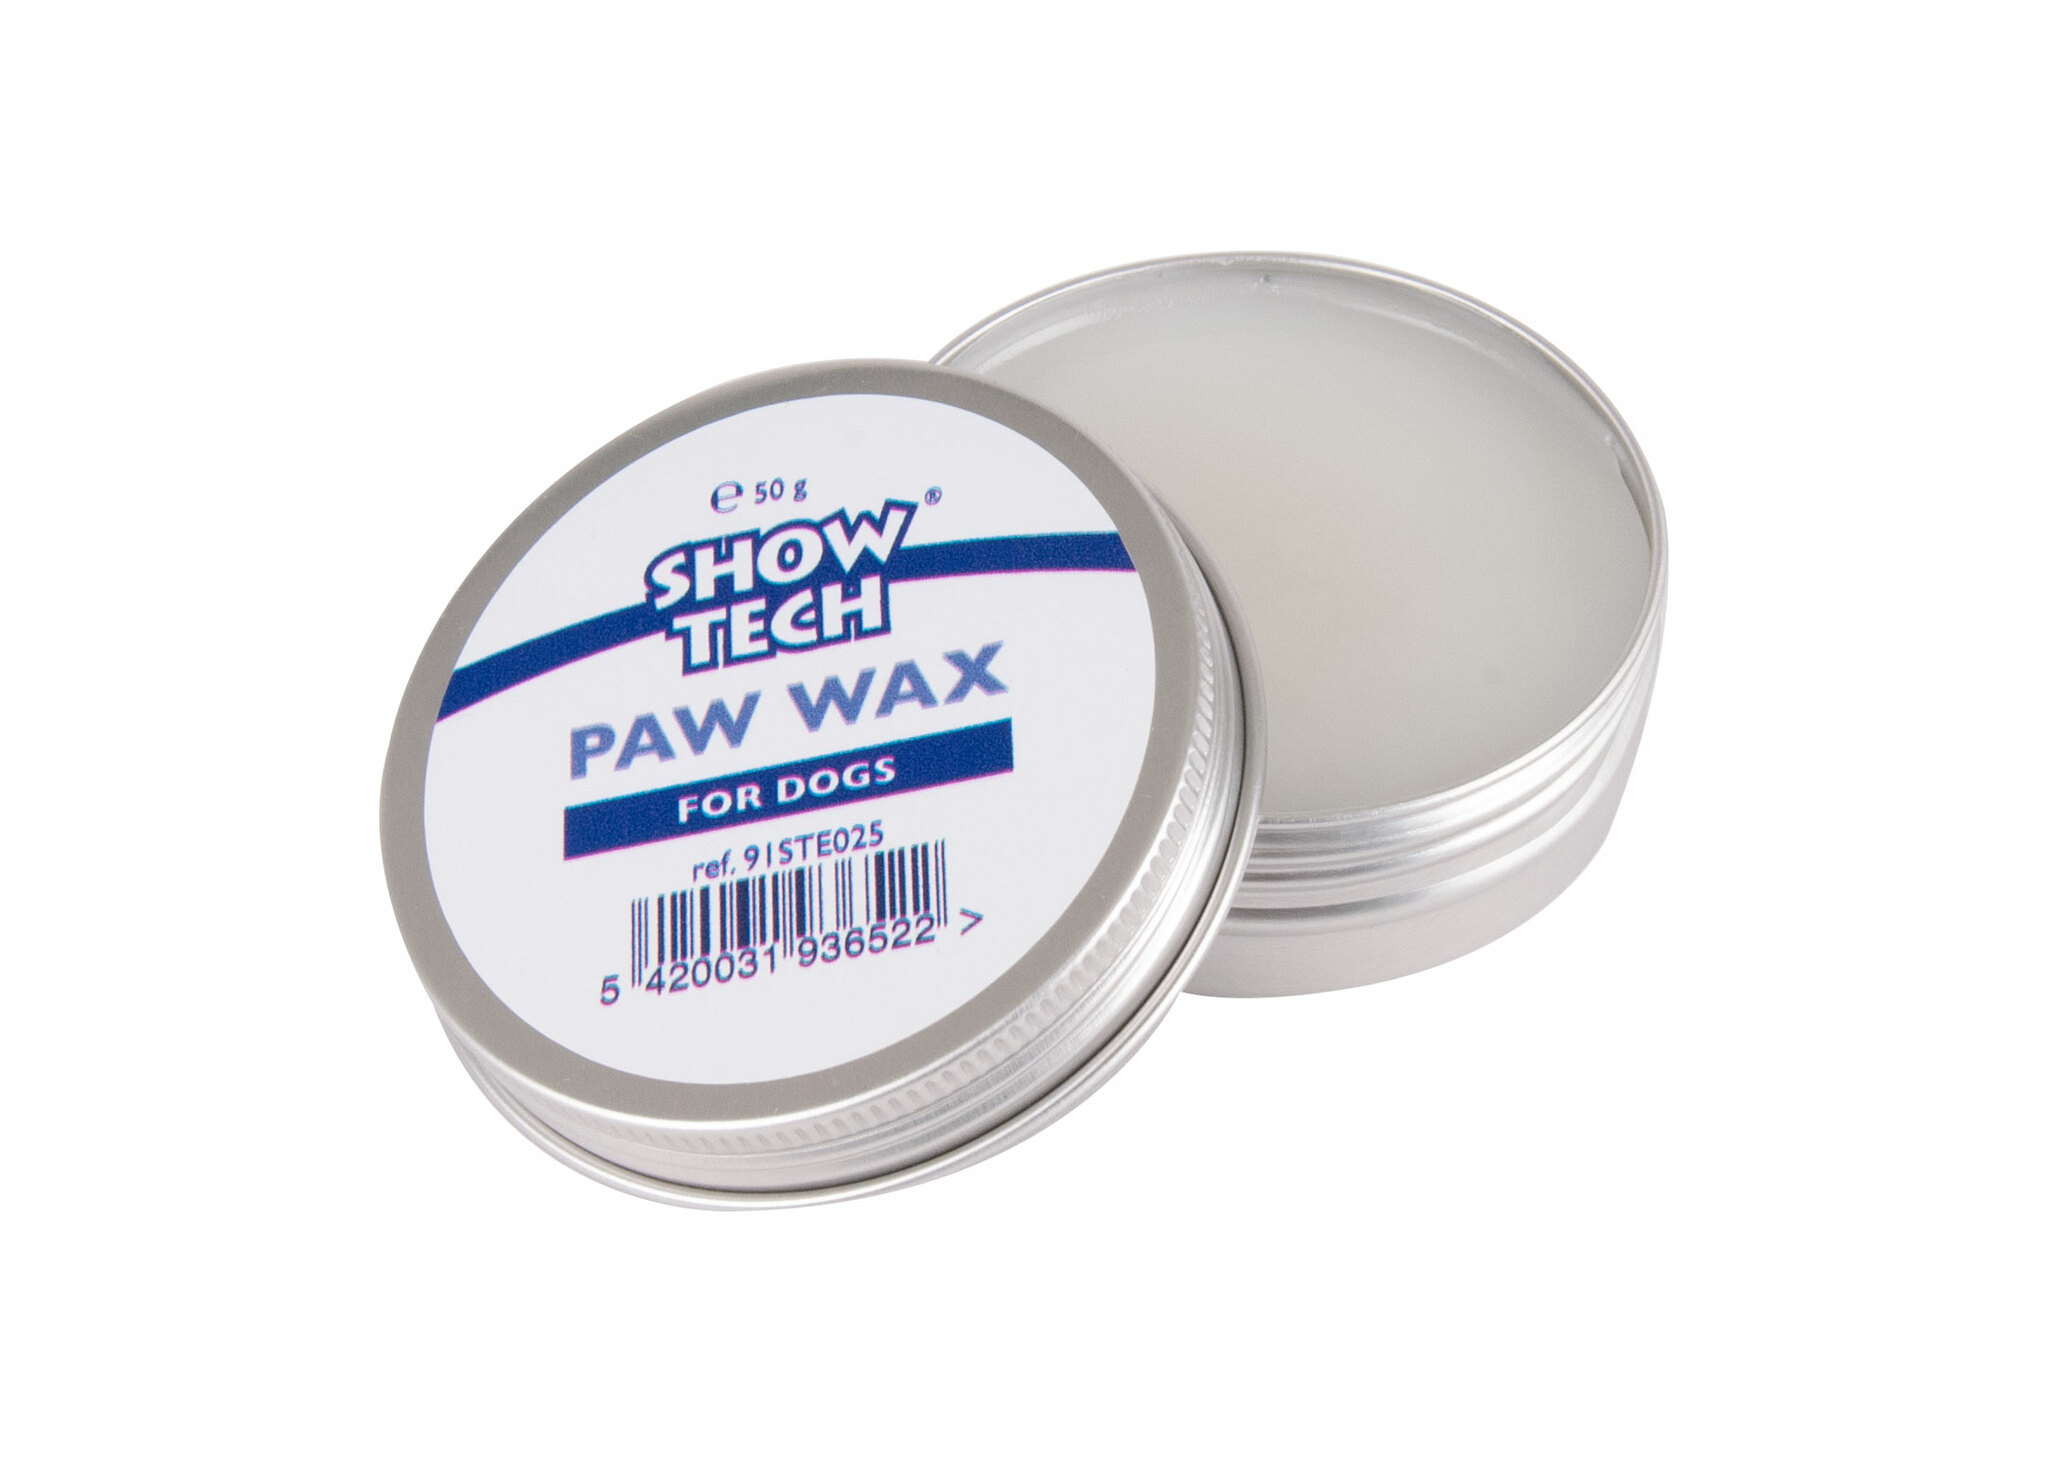 Paw Wax